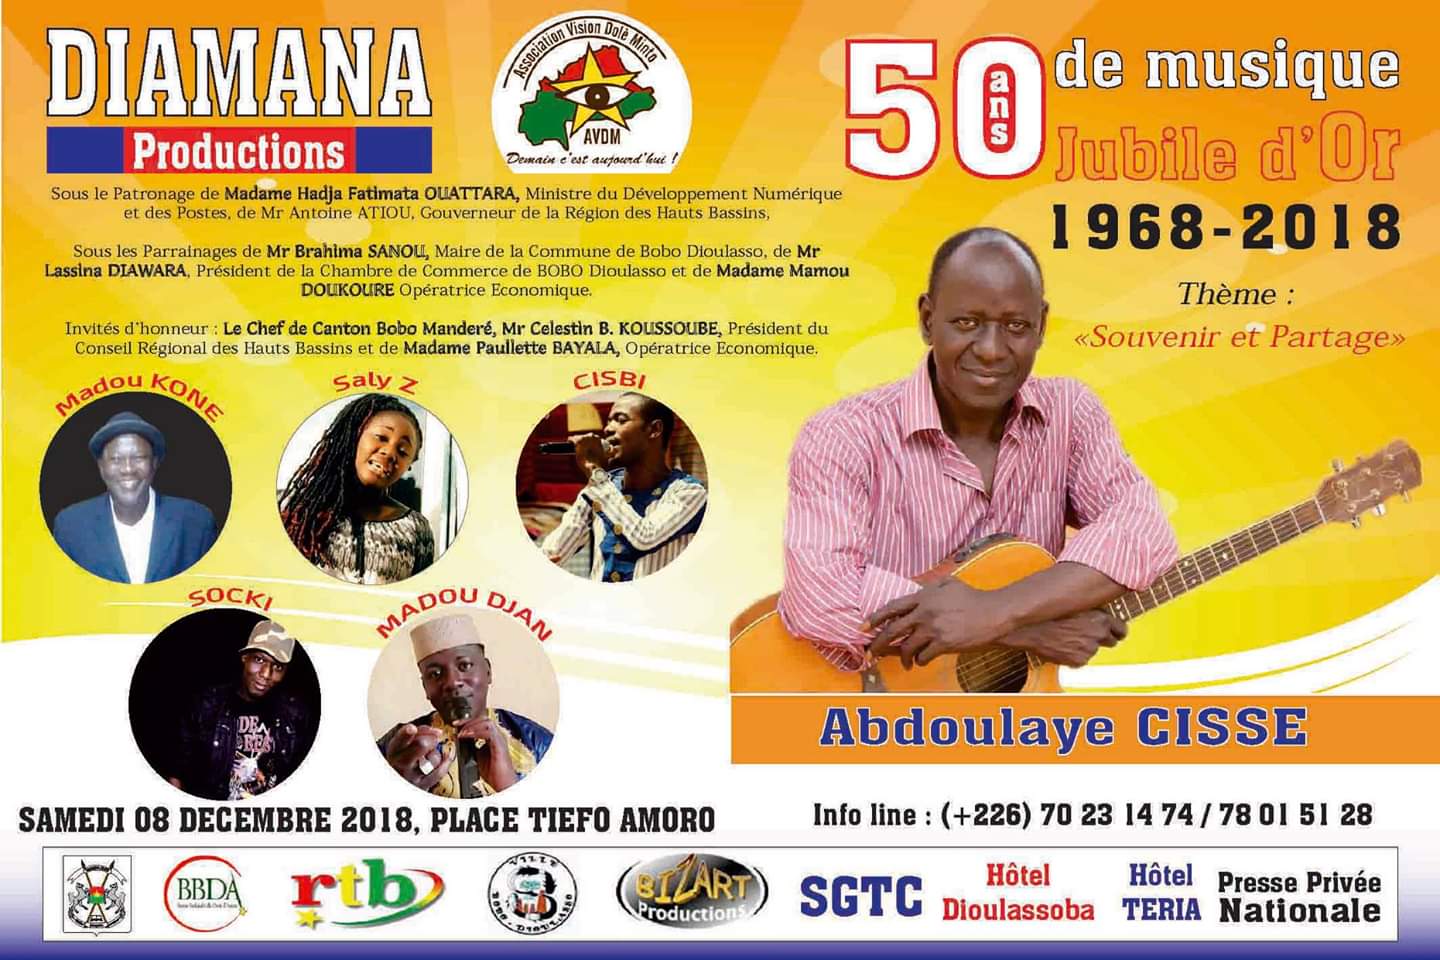  Show-biz : Abdoulaye Cissé en concert géant à Bobo pour ses 50 ans de carrière musicale (1968- 2018).